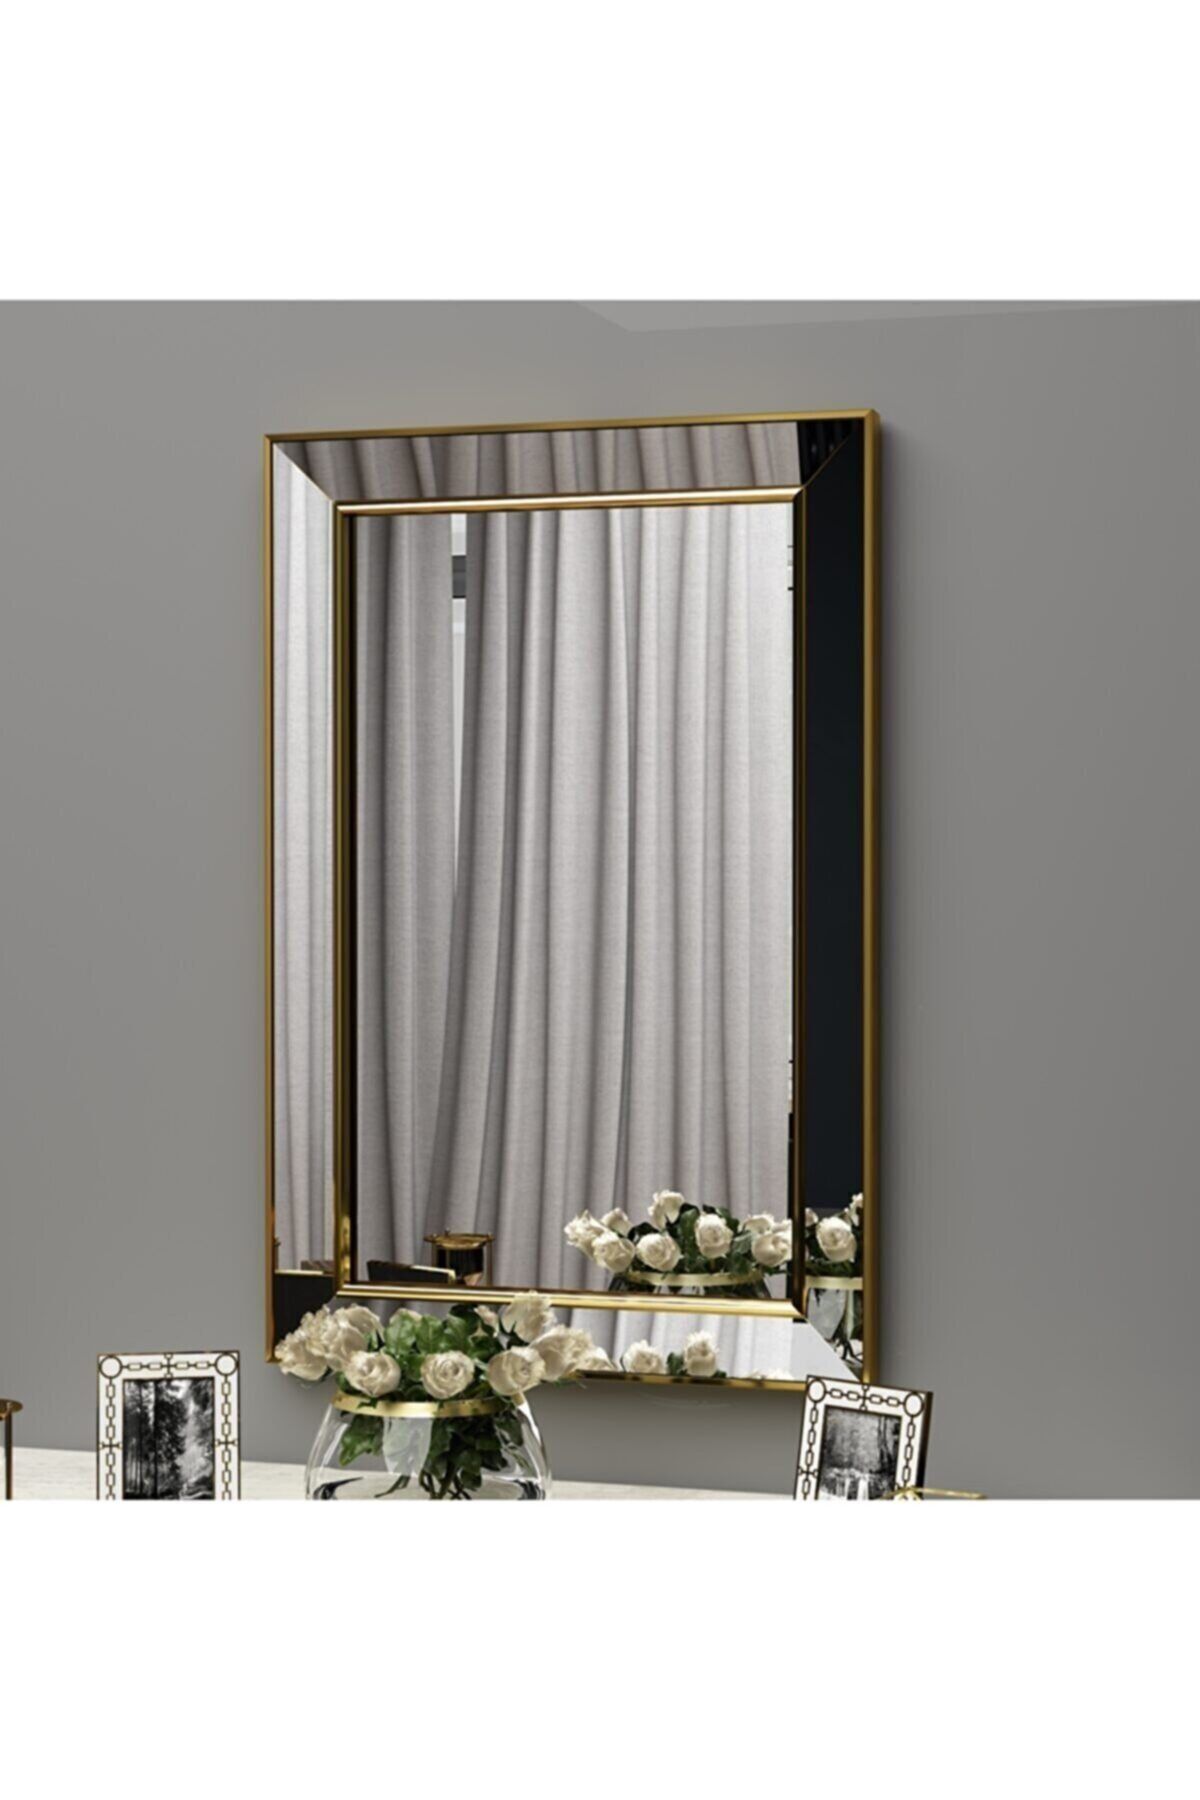 MONEayna Tekli Ayna Çerçeveli Dekoratif Salon Ofis Duvar Aynası 50x75 Altın